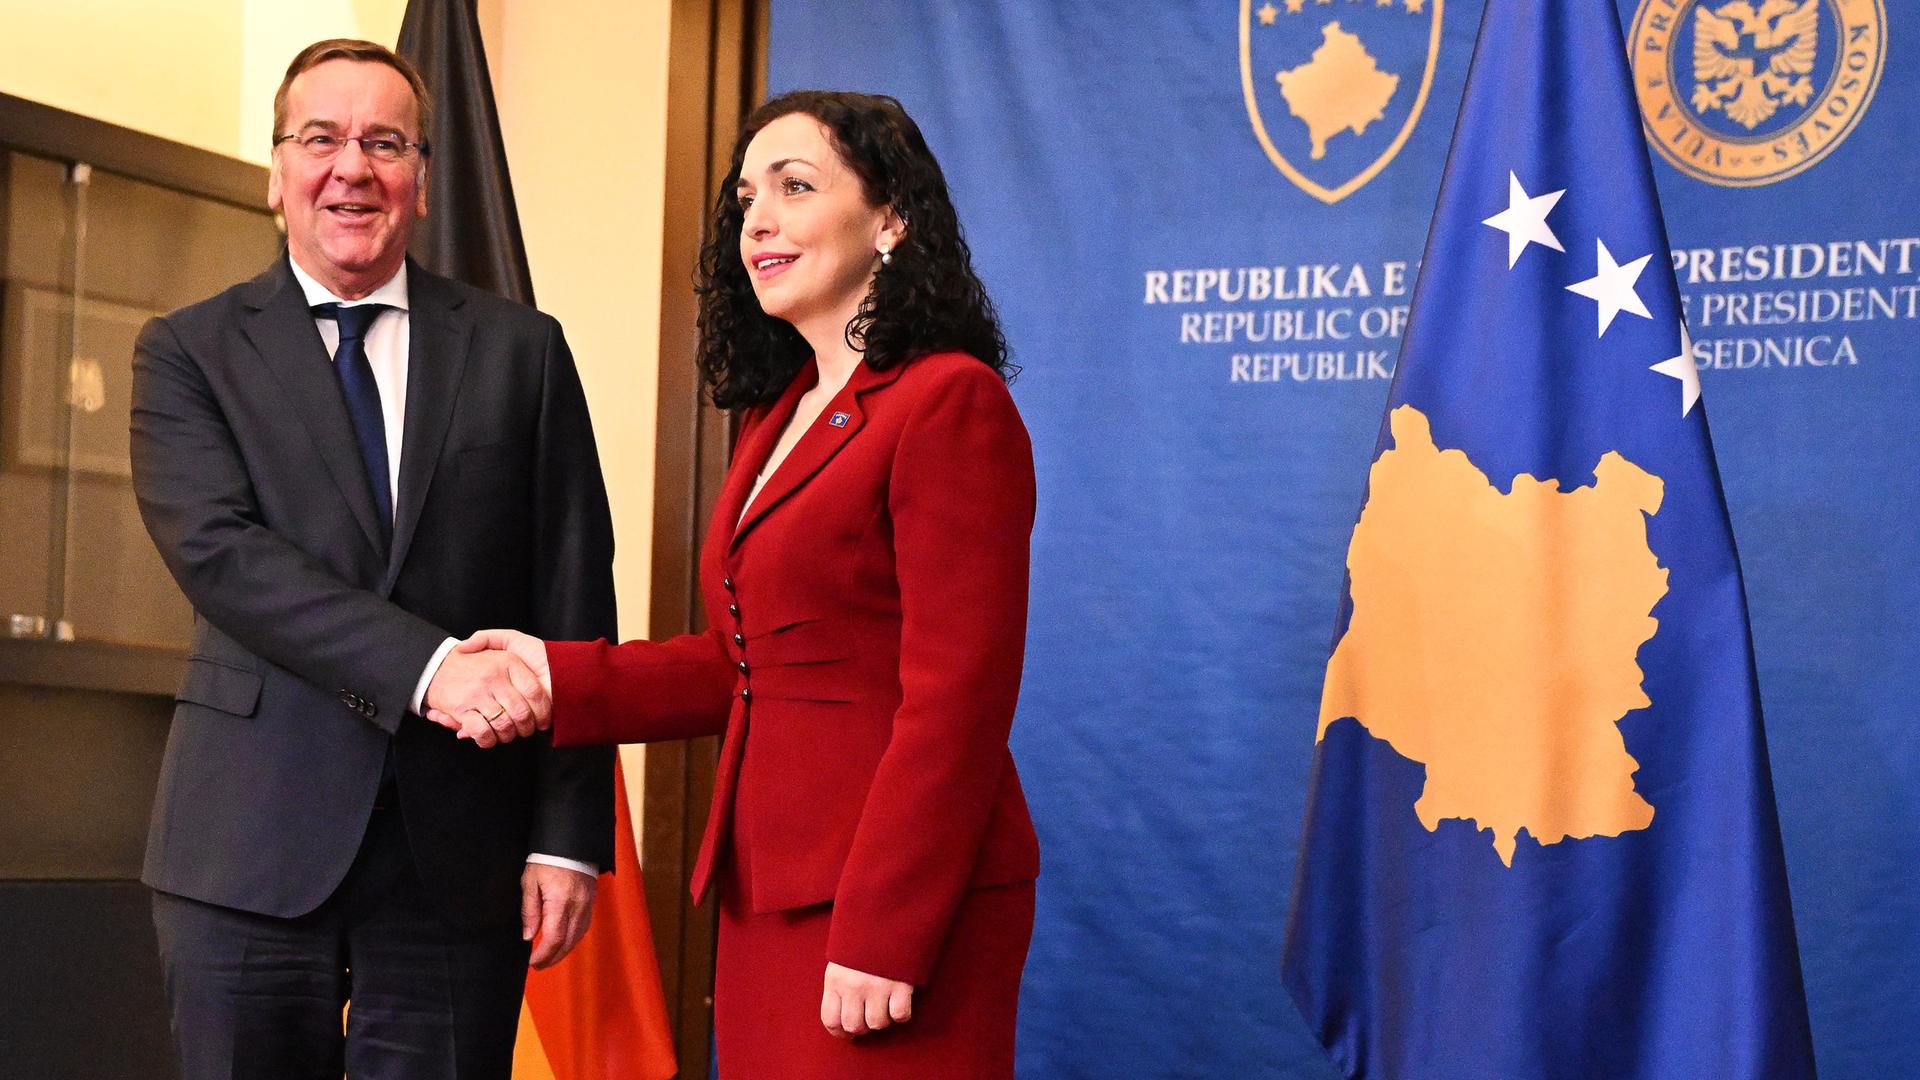 Boris Pistorius wird von Vjosa Osmani, Präsidentin der Republik Kosovo, per Handschlag begrüßt.